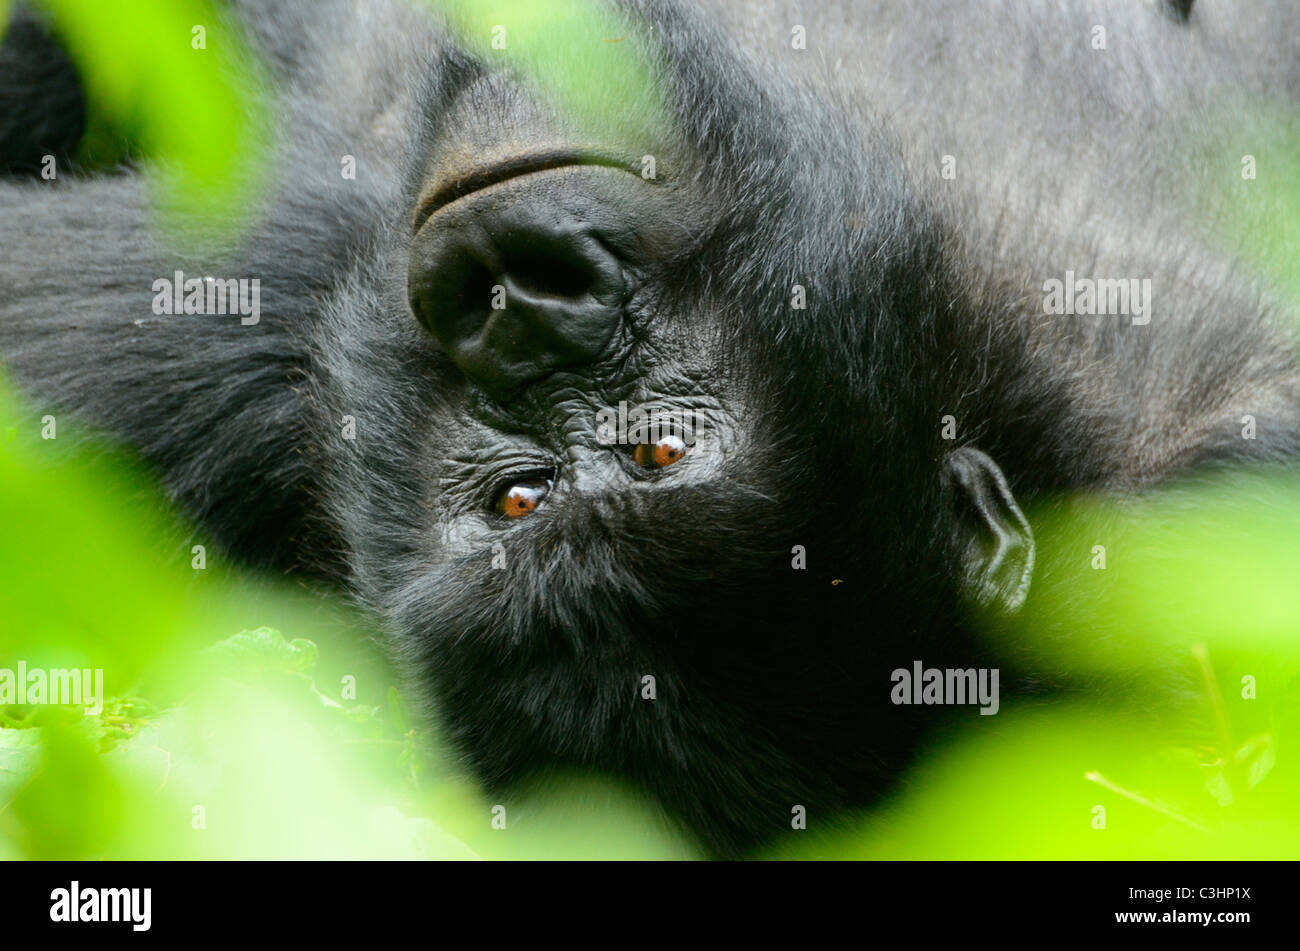 Gorilla trekking à Buhimo dans le parc national des Virunga, en République démocratique du Congo. Détente sur de nouveau parmi les feuilles vertes Banque D'Images